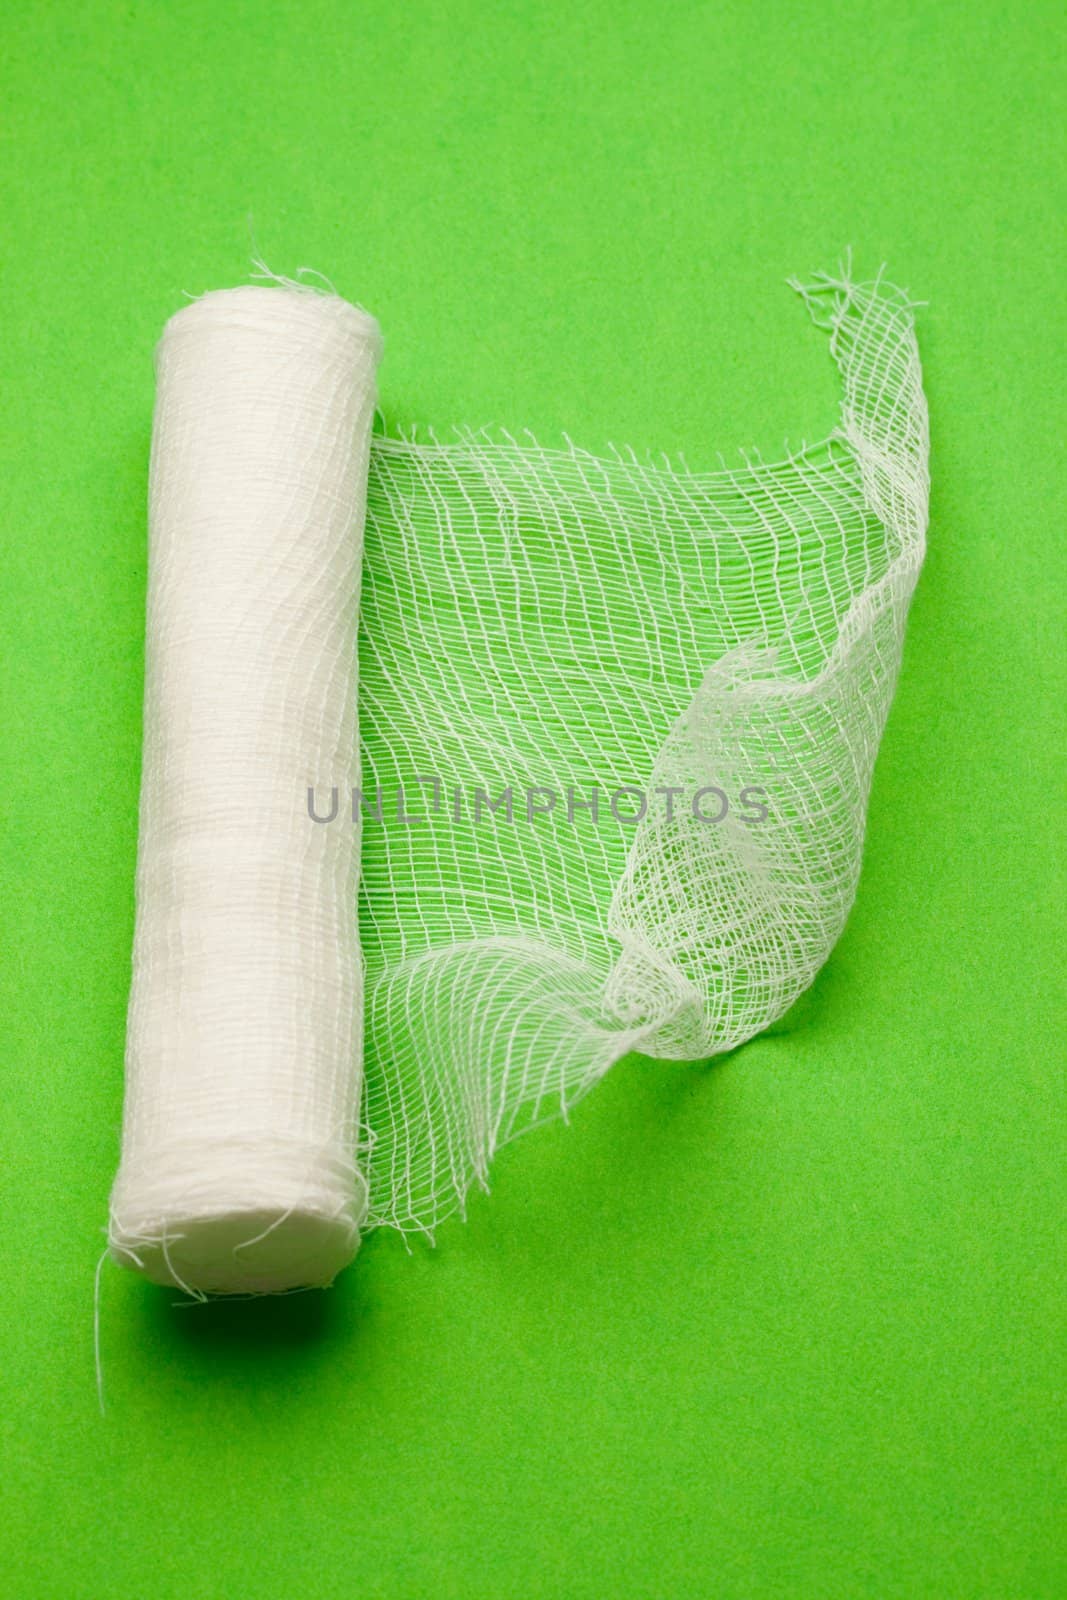 Bandage isolated on green